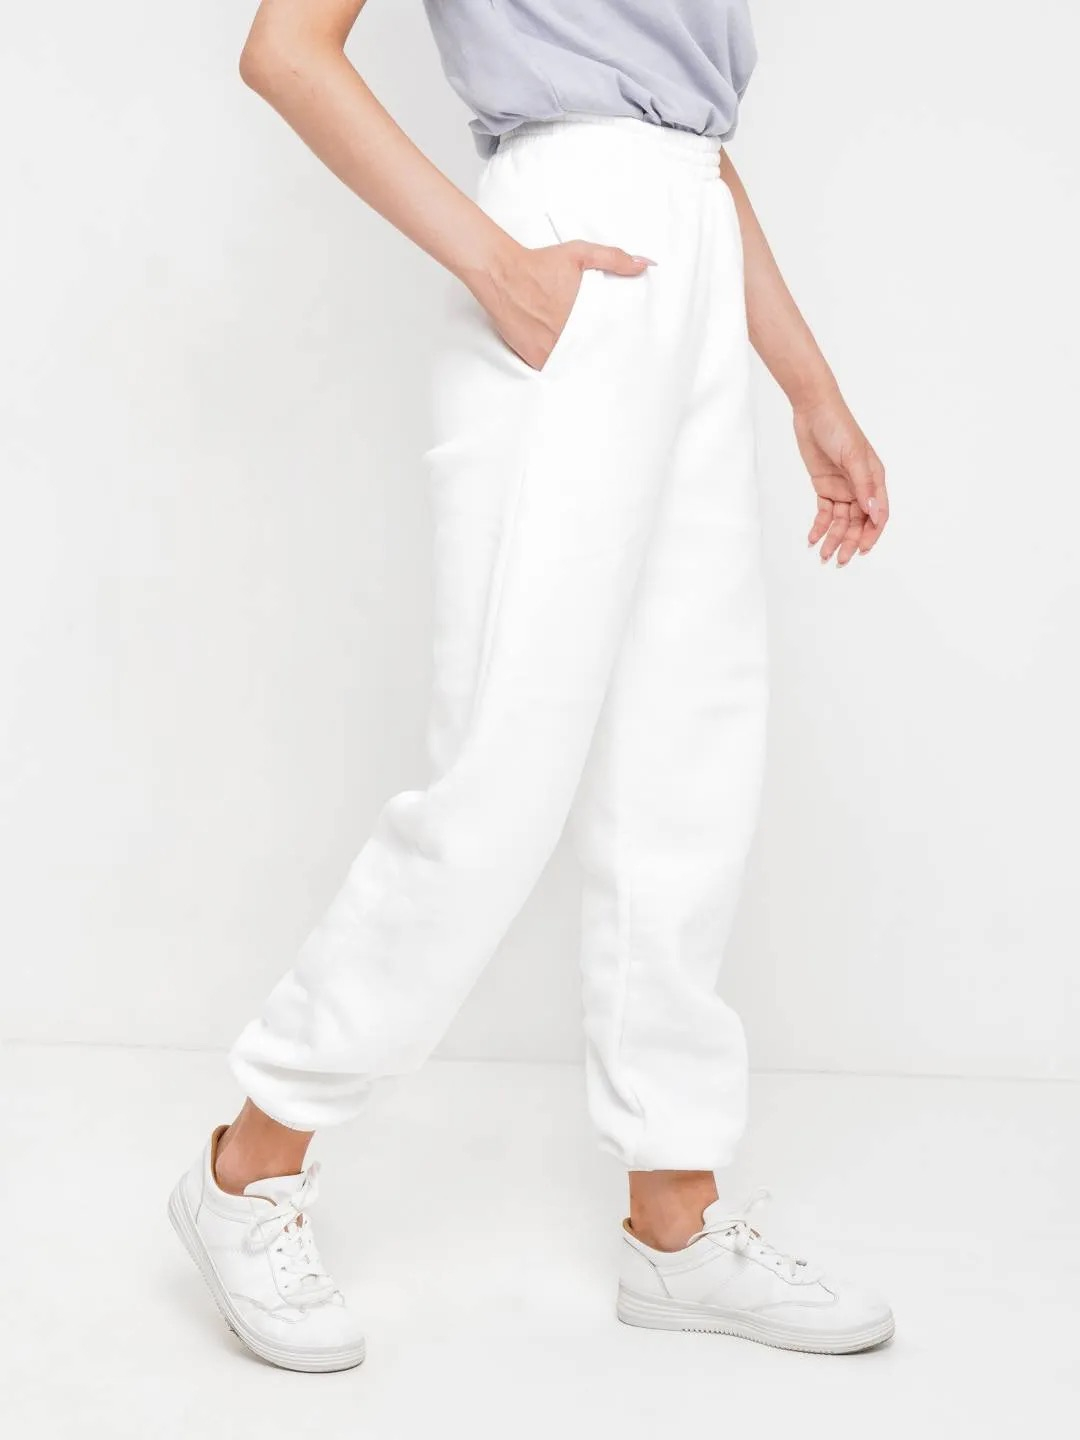 Джоггеры с начесом, белые, теплые штаны, женские купить по цене 2400 ₽ винтернет-магазине KazanExpress